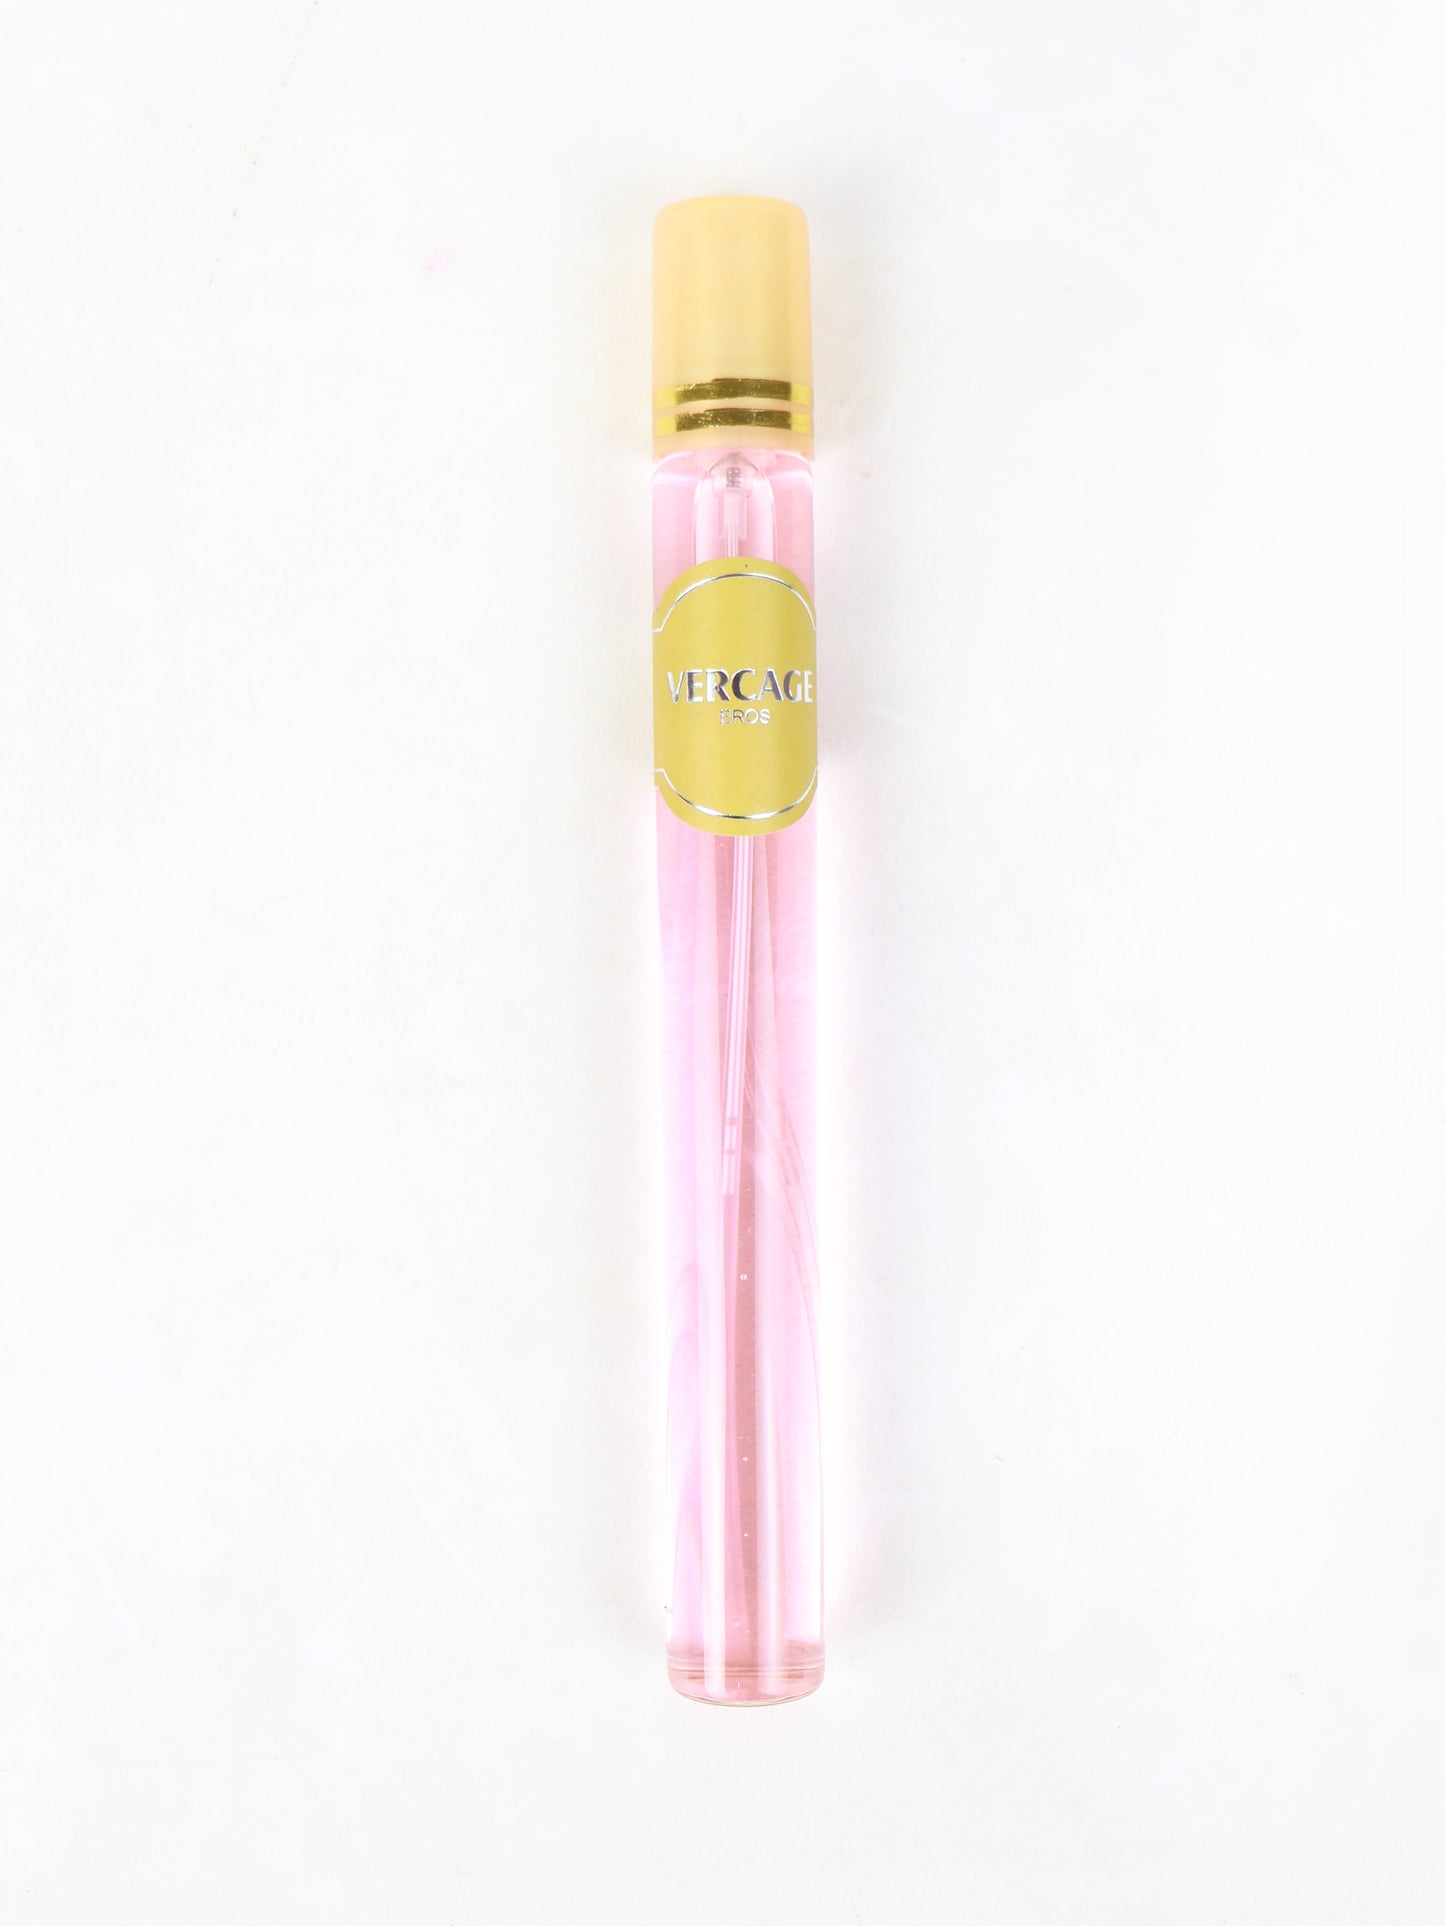 Vercage Pen Perfume - 35ML